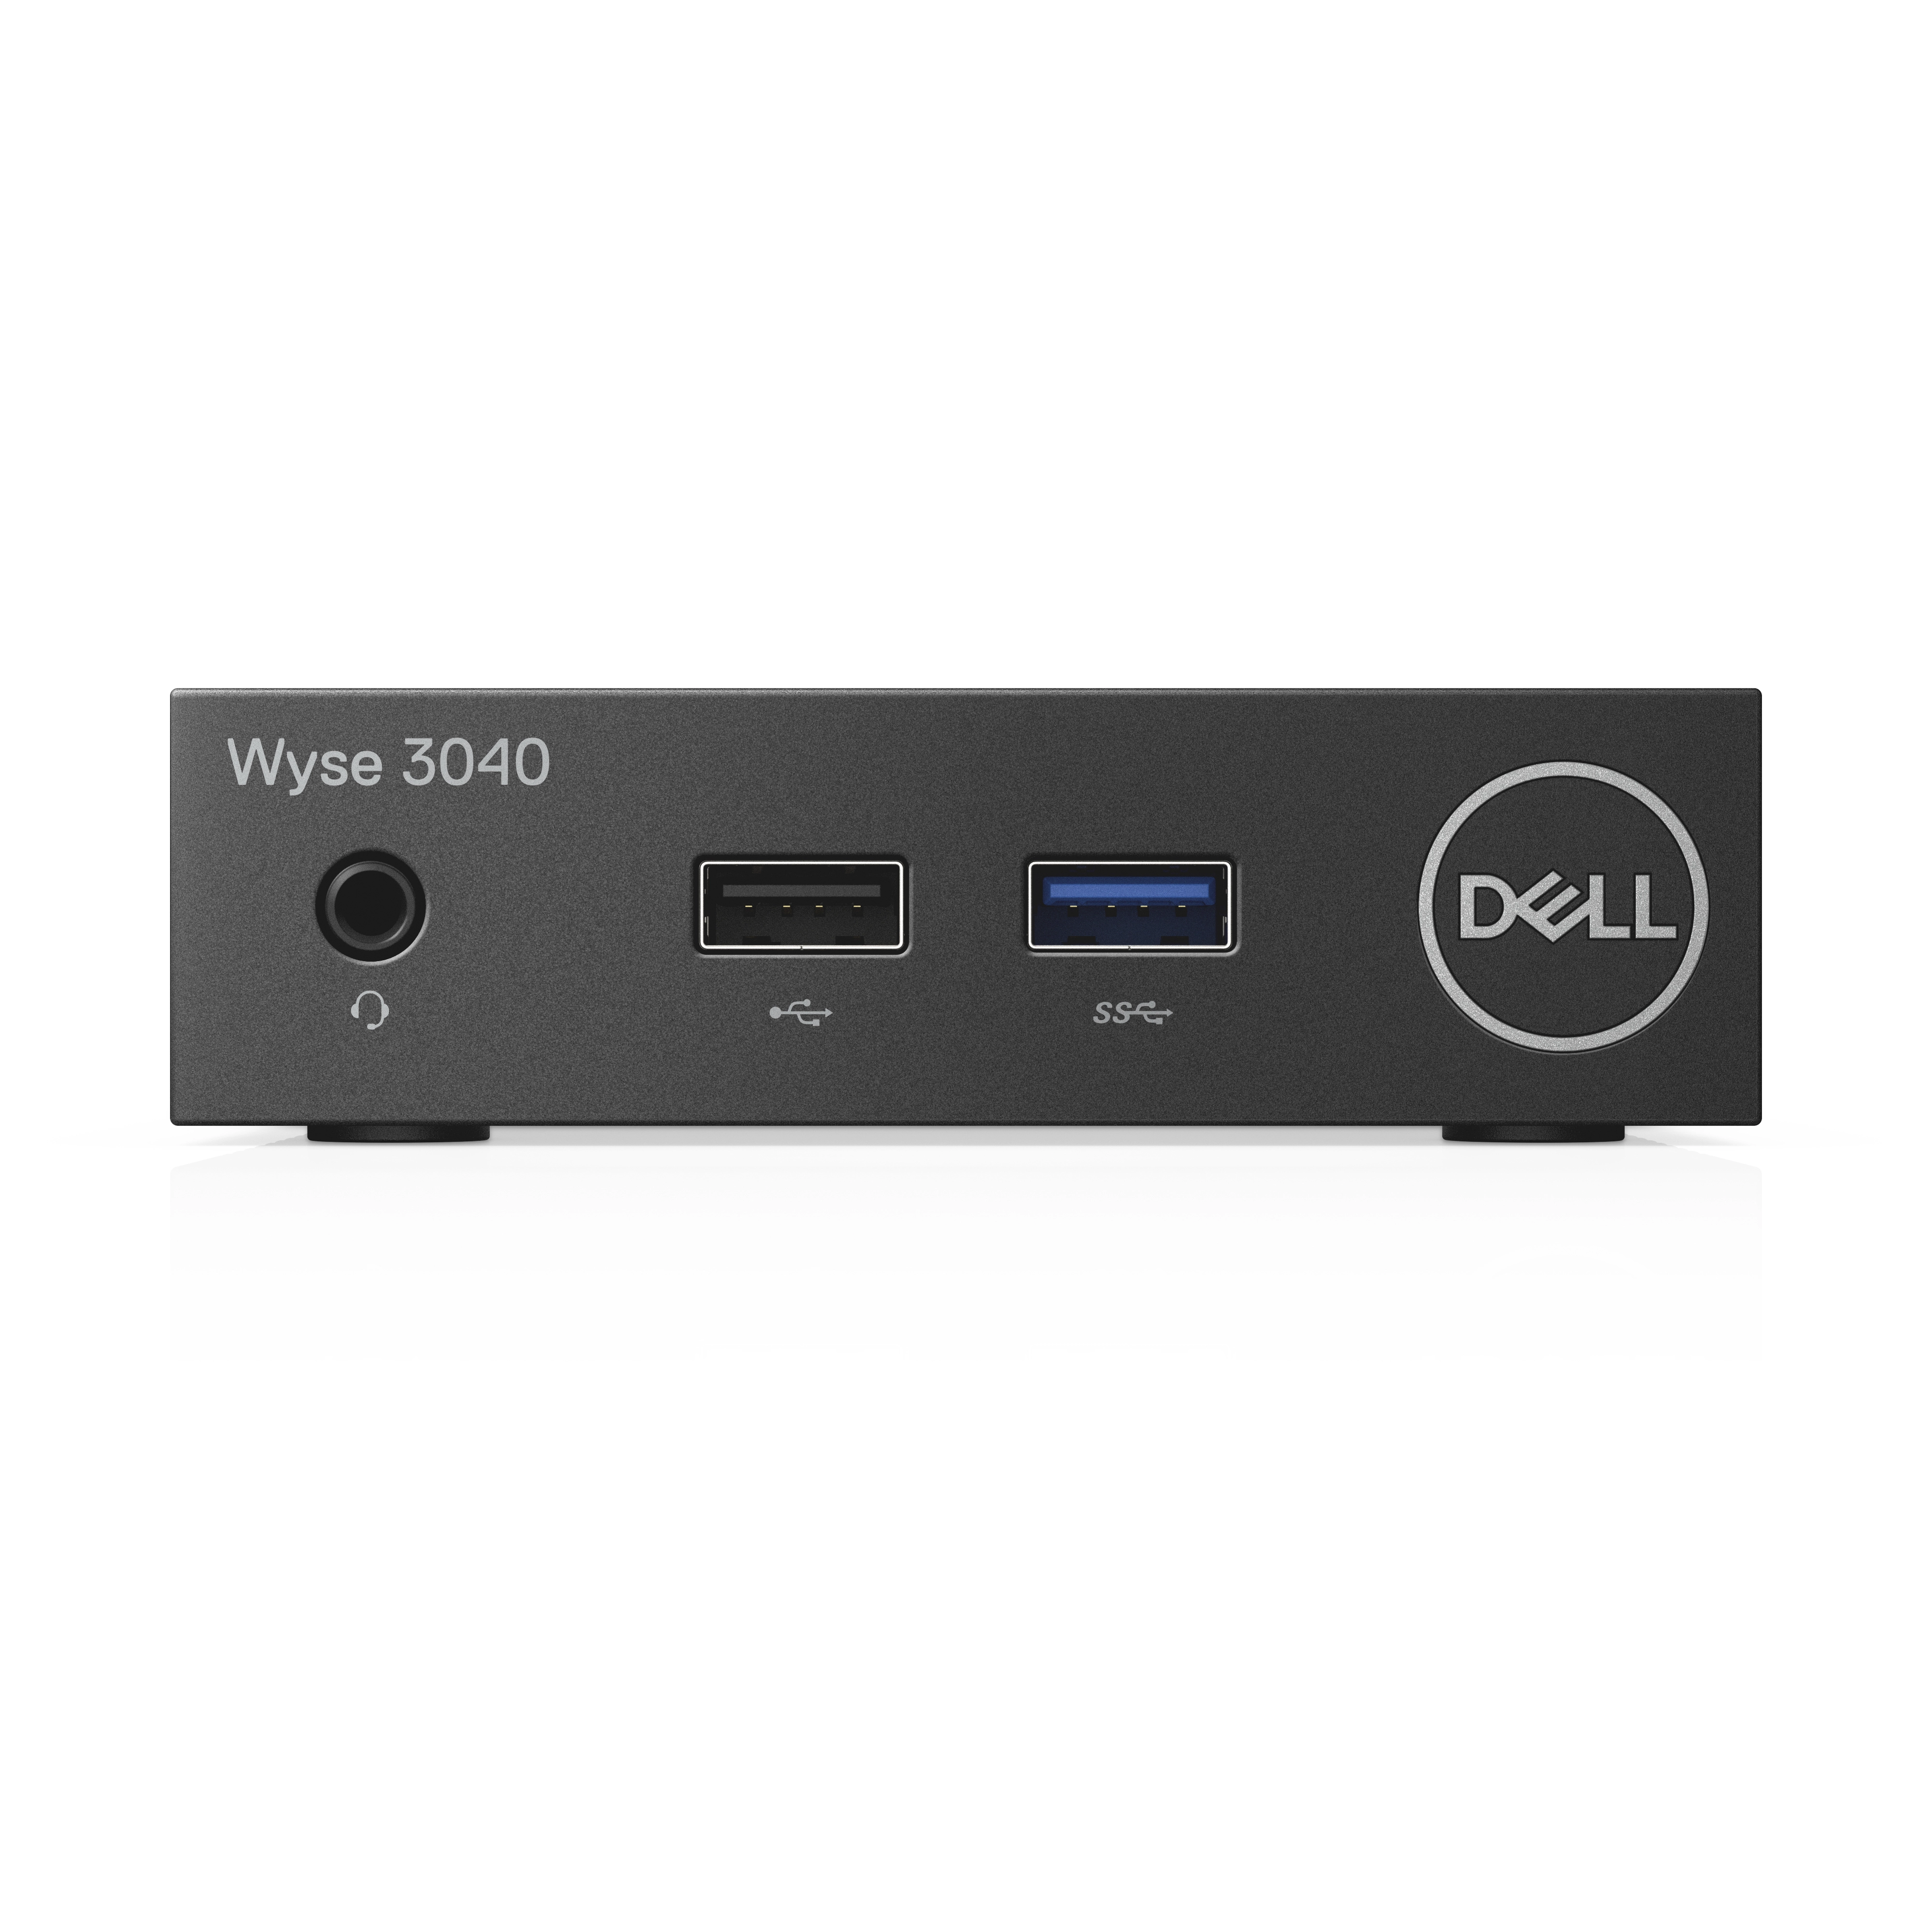 Dell Wyse 3040 - 2GB RAM - 8GB SSD - OS11 